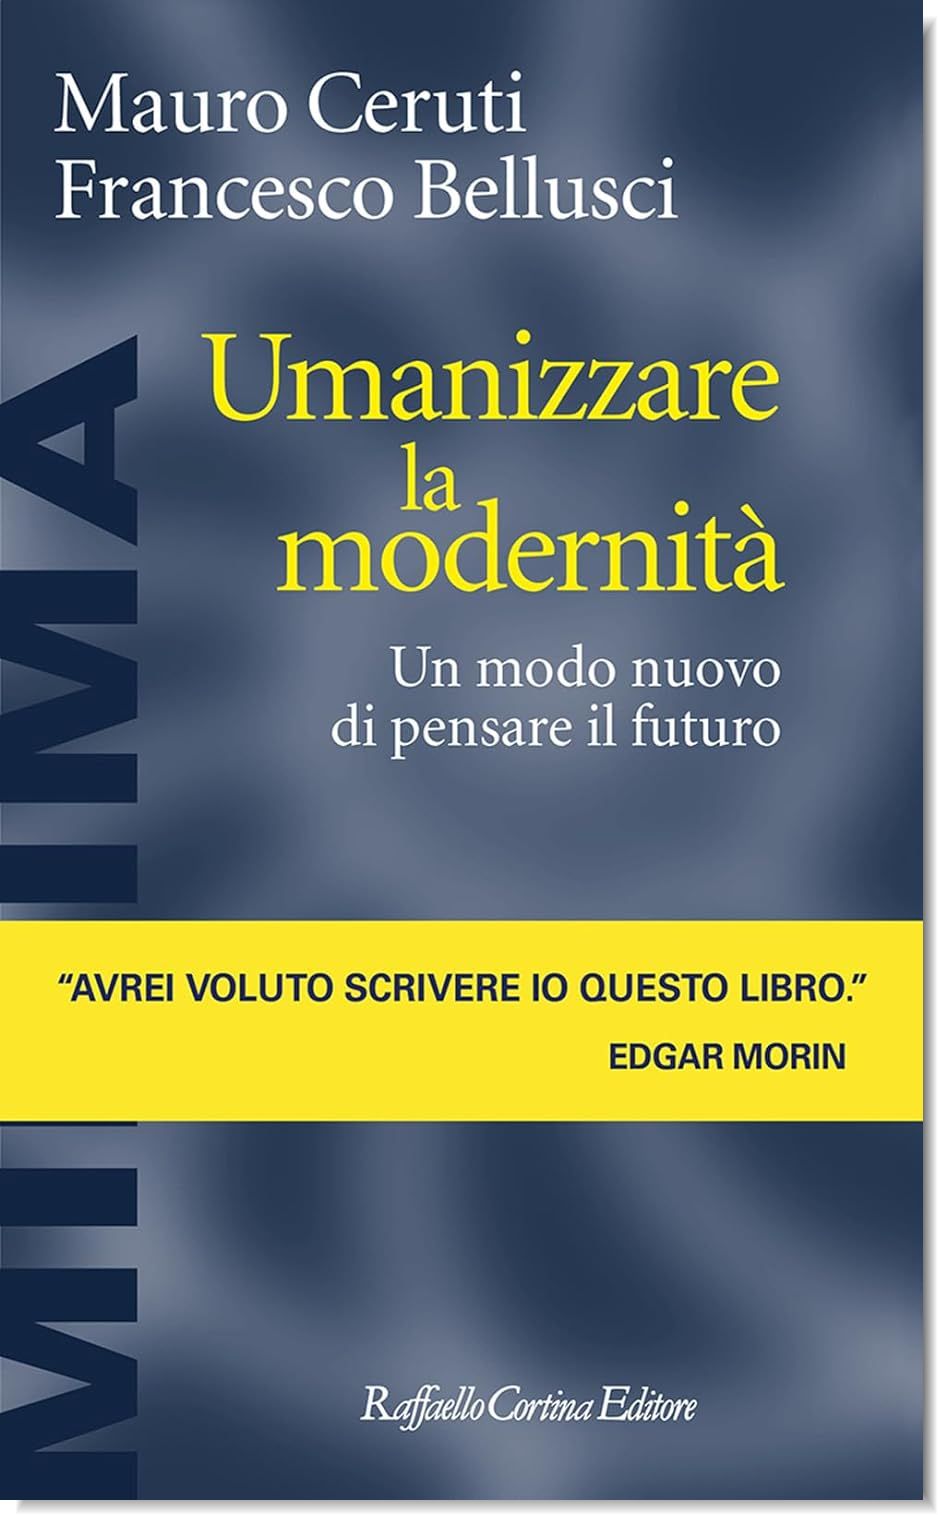 Umanizzare la modernità di Francesco Bellusci, Mauro Ceruti